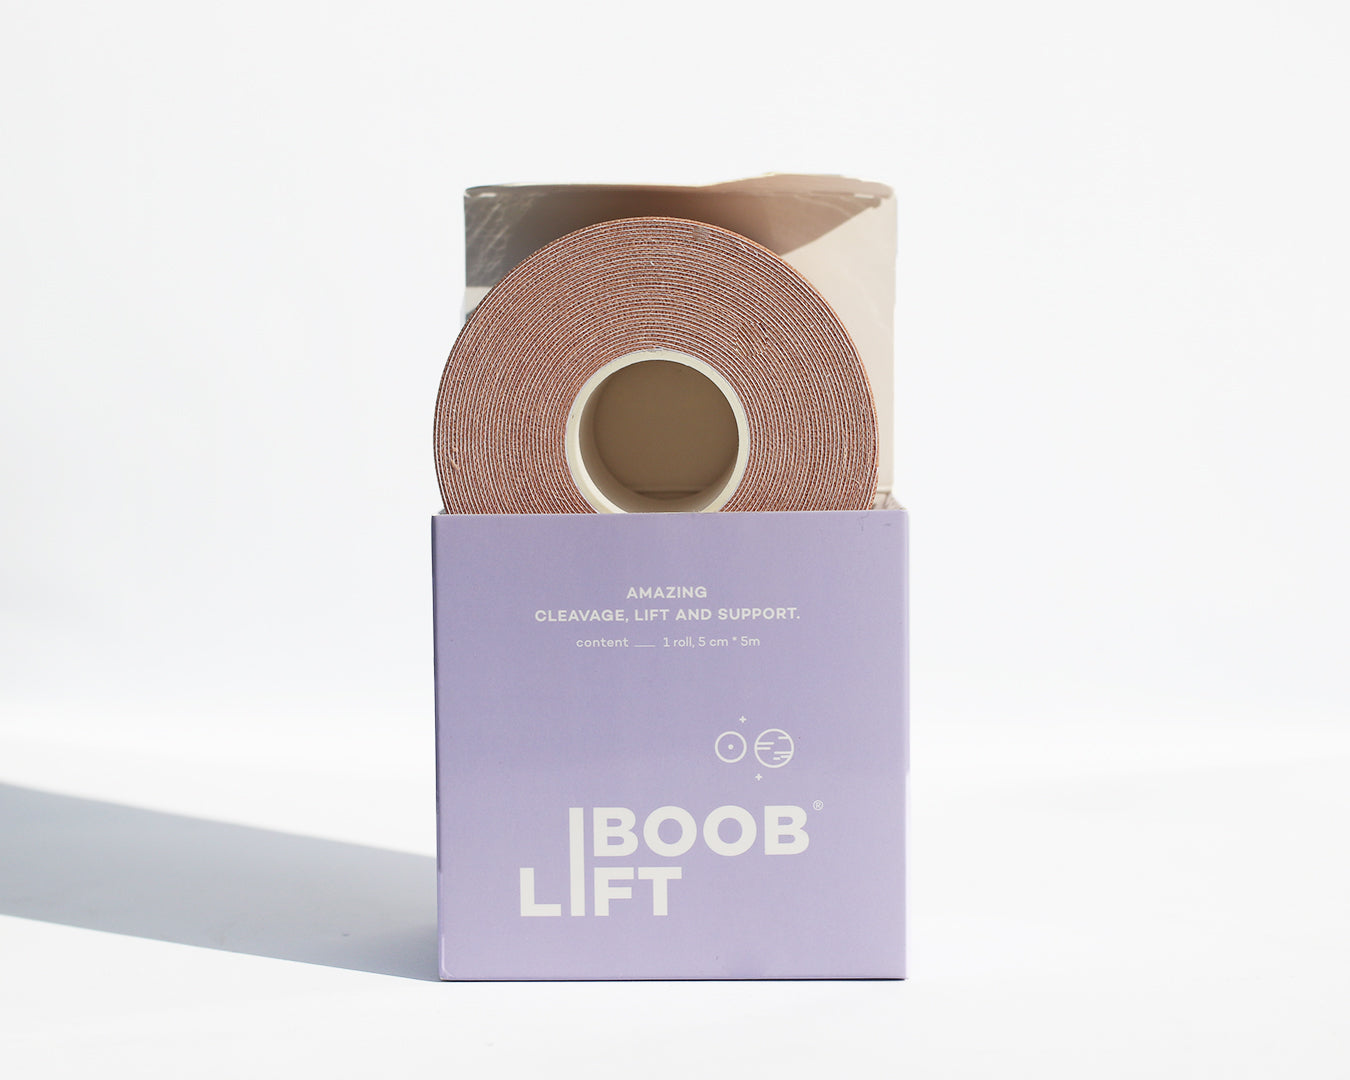 Boob Lift Tape, Rollo de tela con adhesivo que funciona como brassiere para dar forma, soporte y levantar.